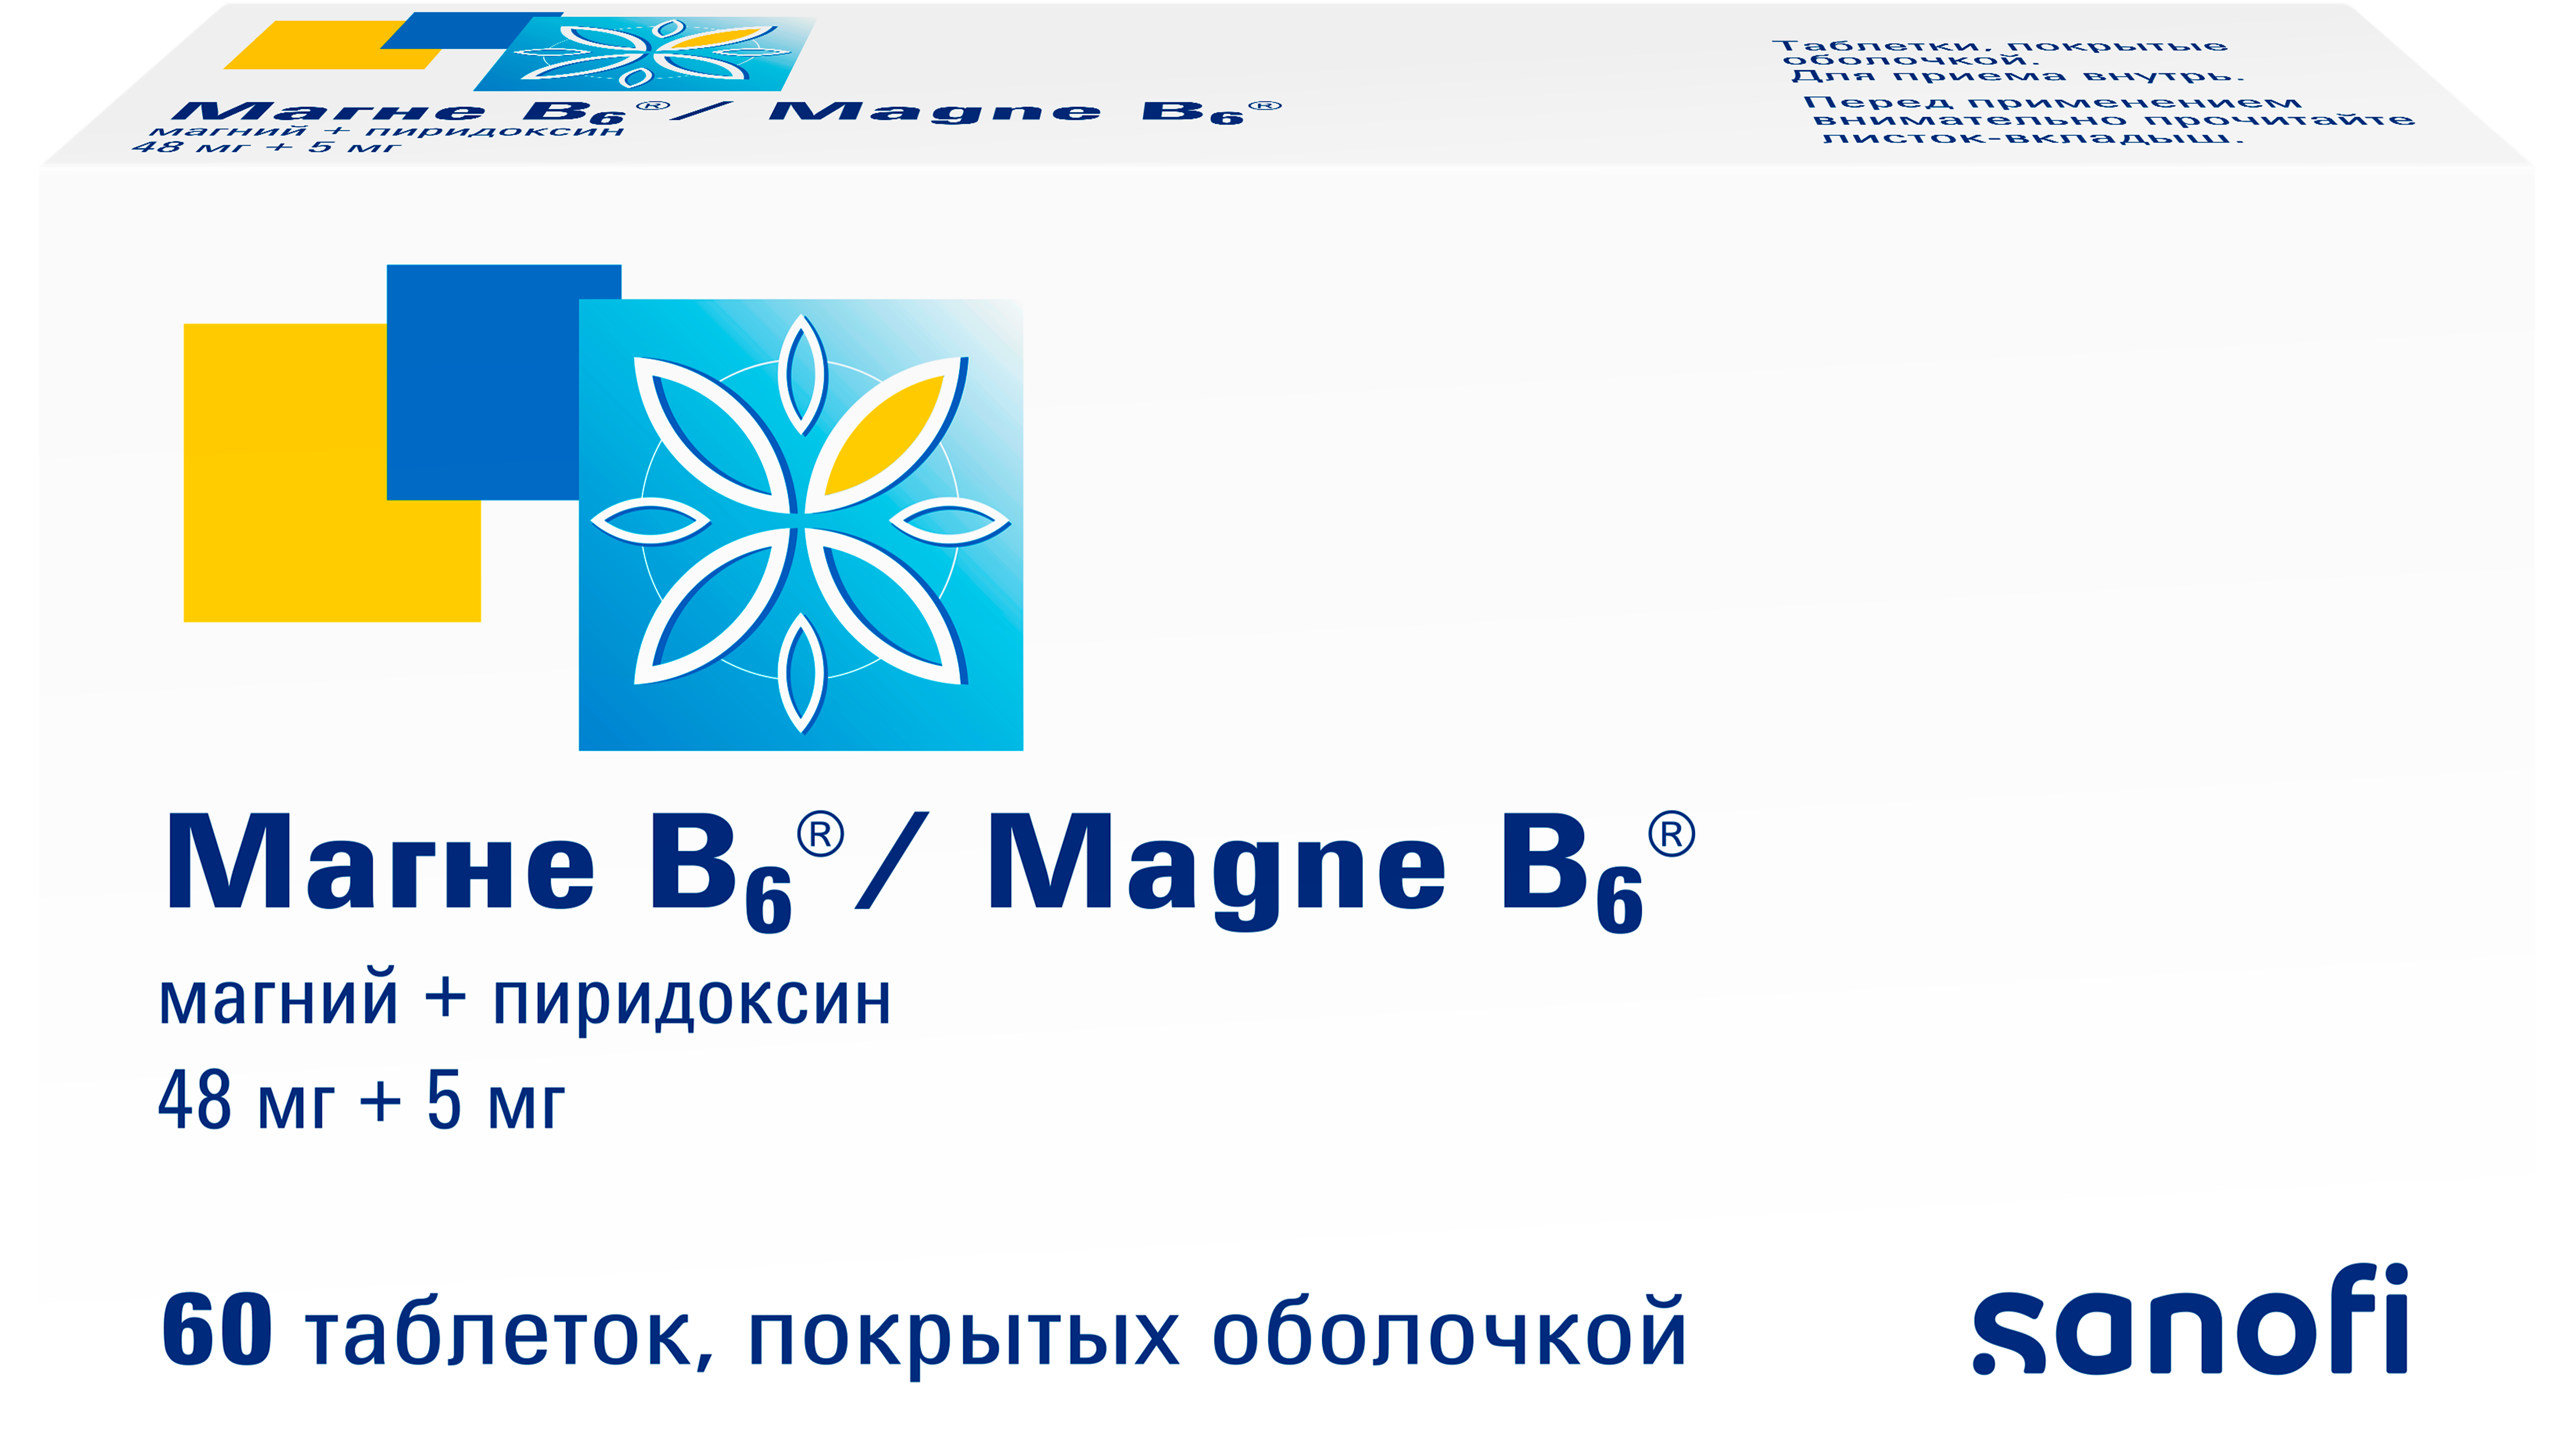 Нарушение сна при дефиците магния в организме | Магне В6®